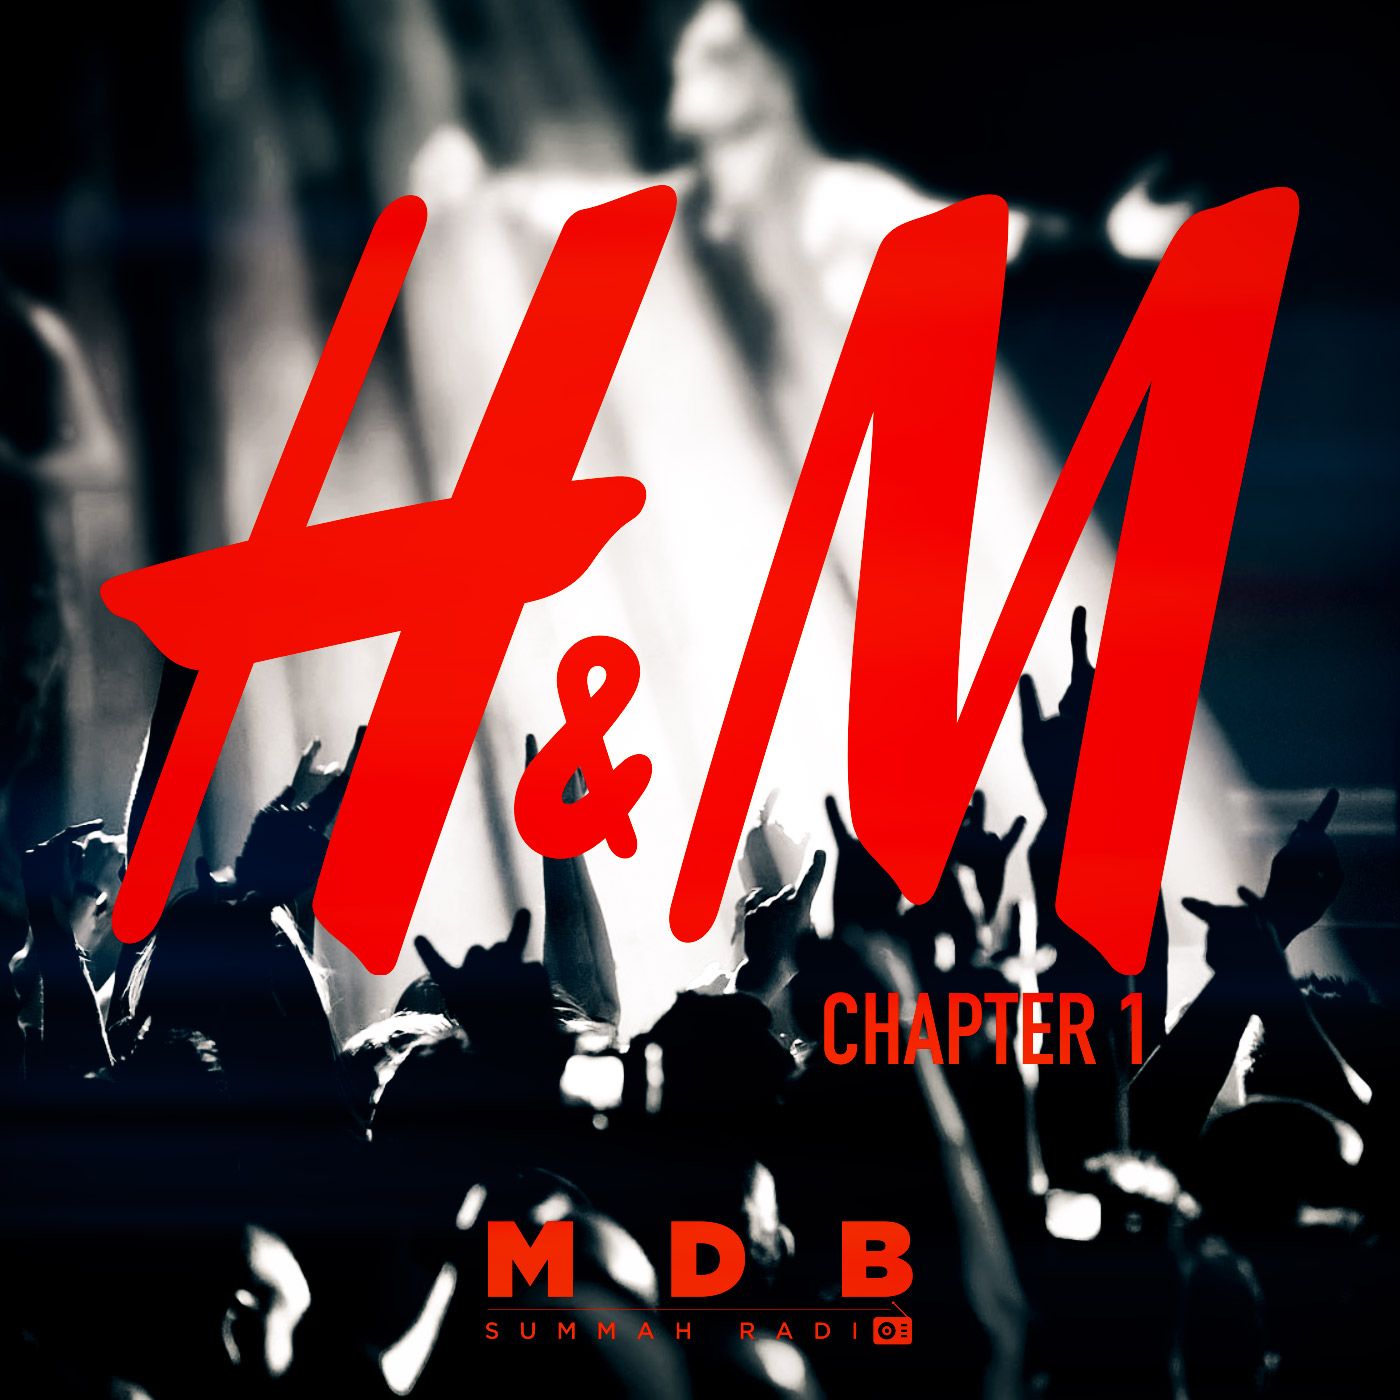 MDB Summah Radio | Ep. 82 "H&M (Chapter I)"